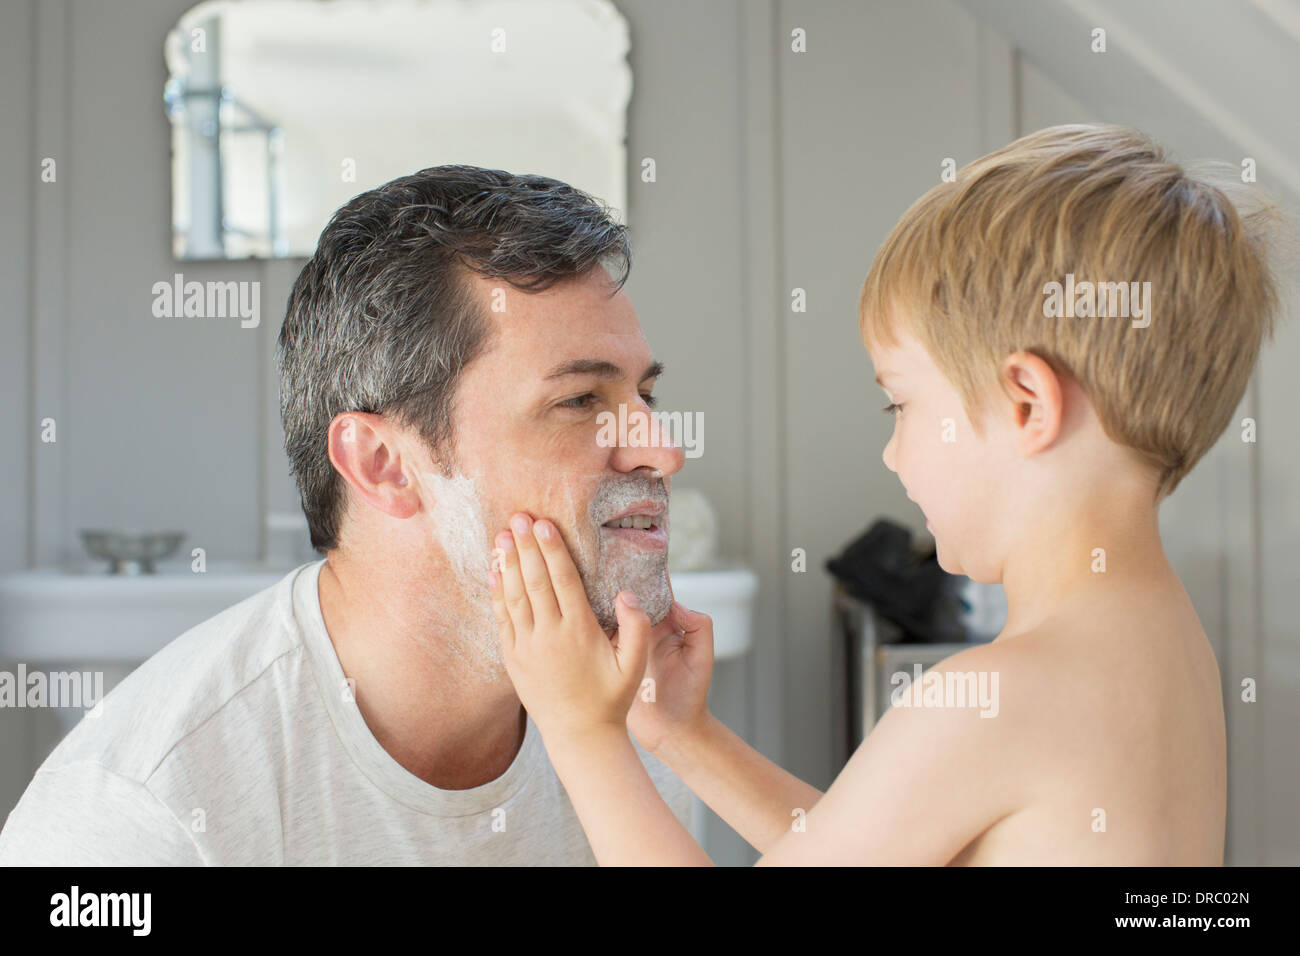 Junge Rasierschaum auf Vaters Gesicht reiben Stockfoto